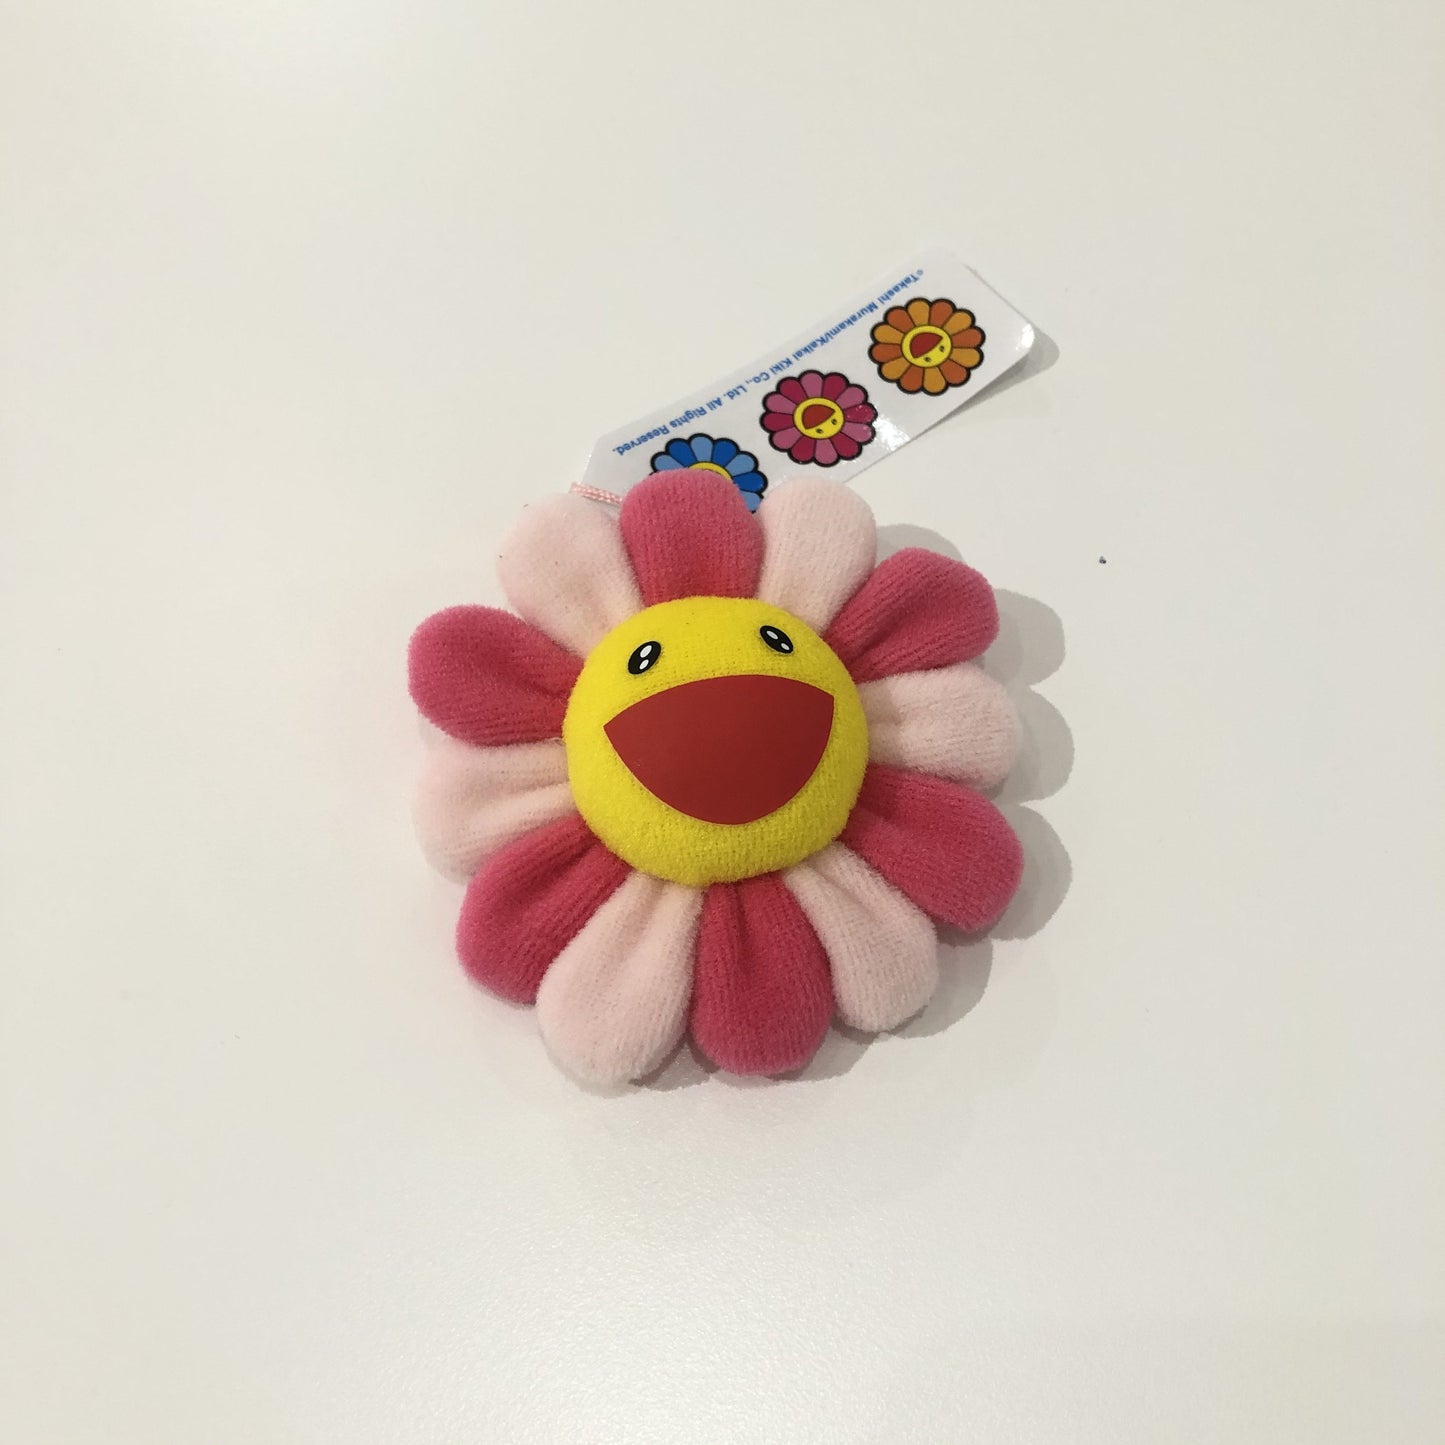 Takashi Murakami Plush Rainbow Flower Pin and Key Chain (Rainbow)